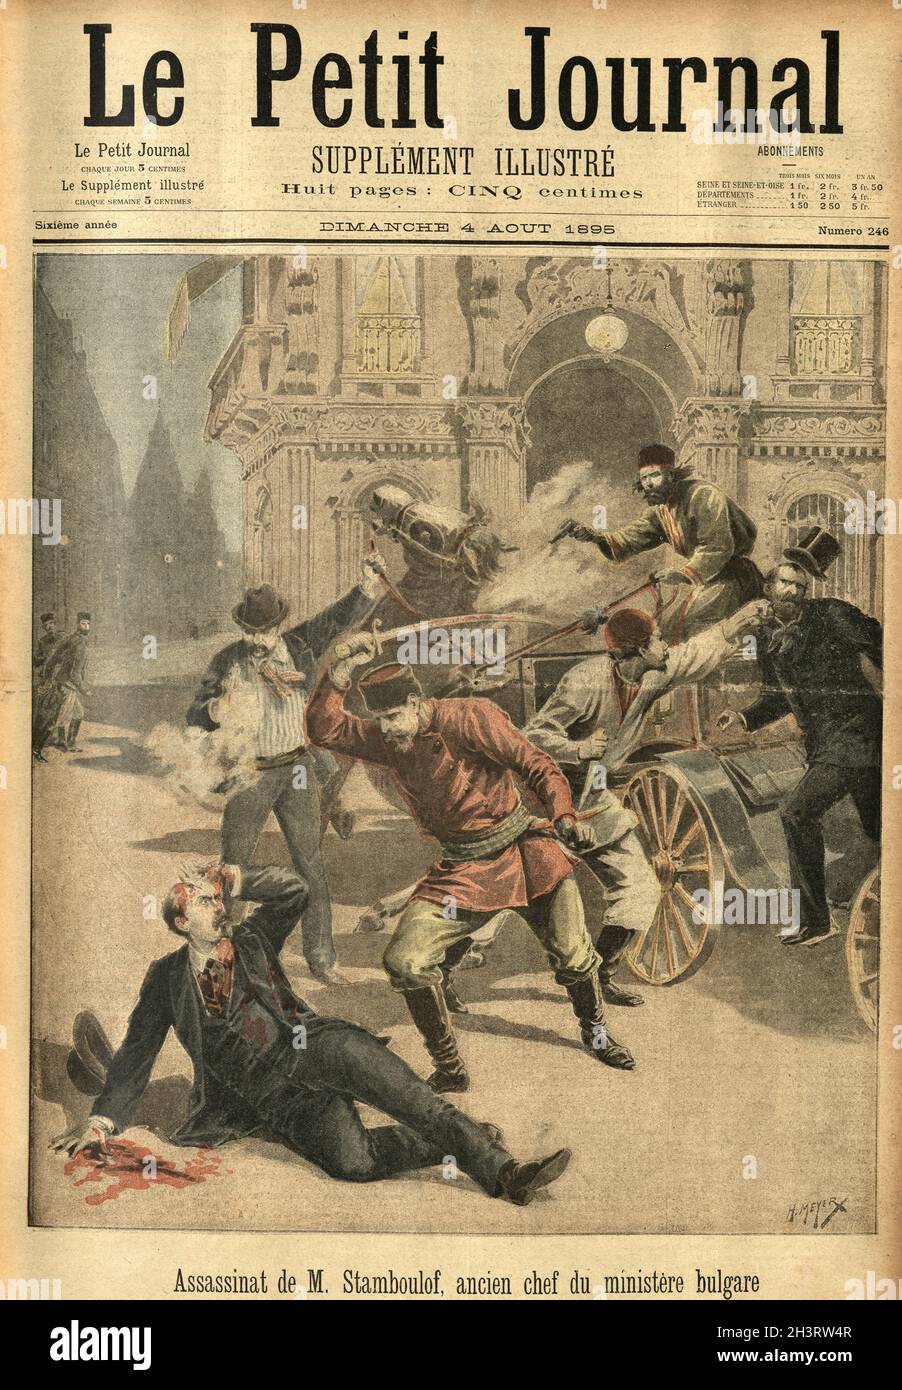 Prima pagina di le Petit Journal, 21 juillet 1895. Assassinat de M. Stamboulof, ancien chef du ministere bulgaro. Assassinio di Stefan Stambolov, ex primo Ministro della Bulgaria. Foto Stock